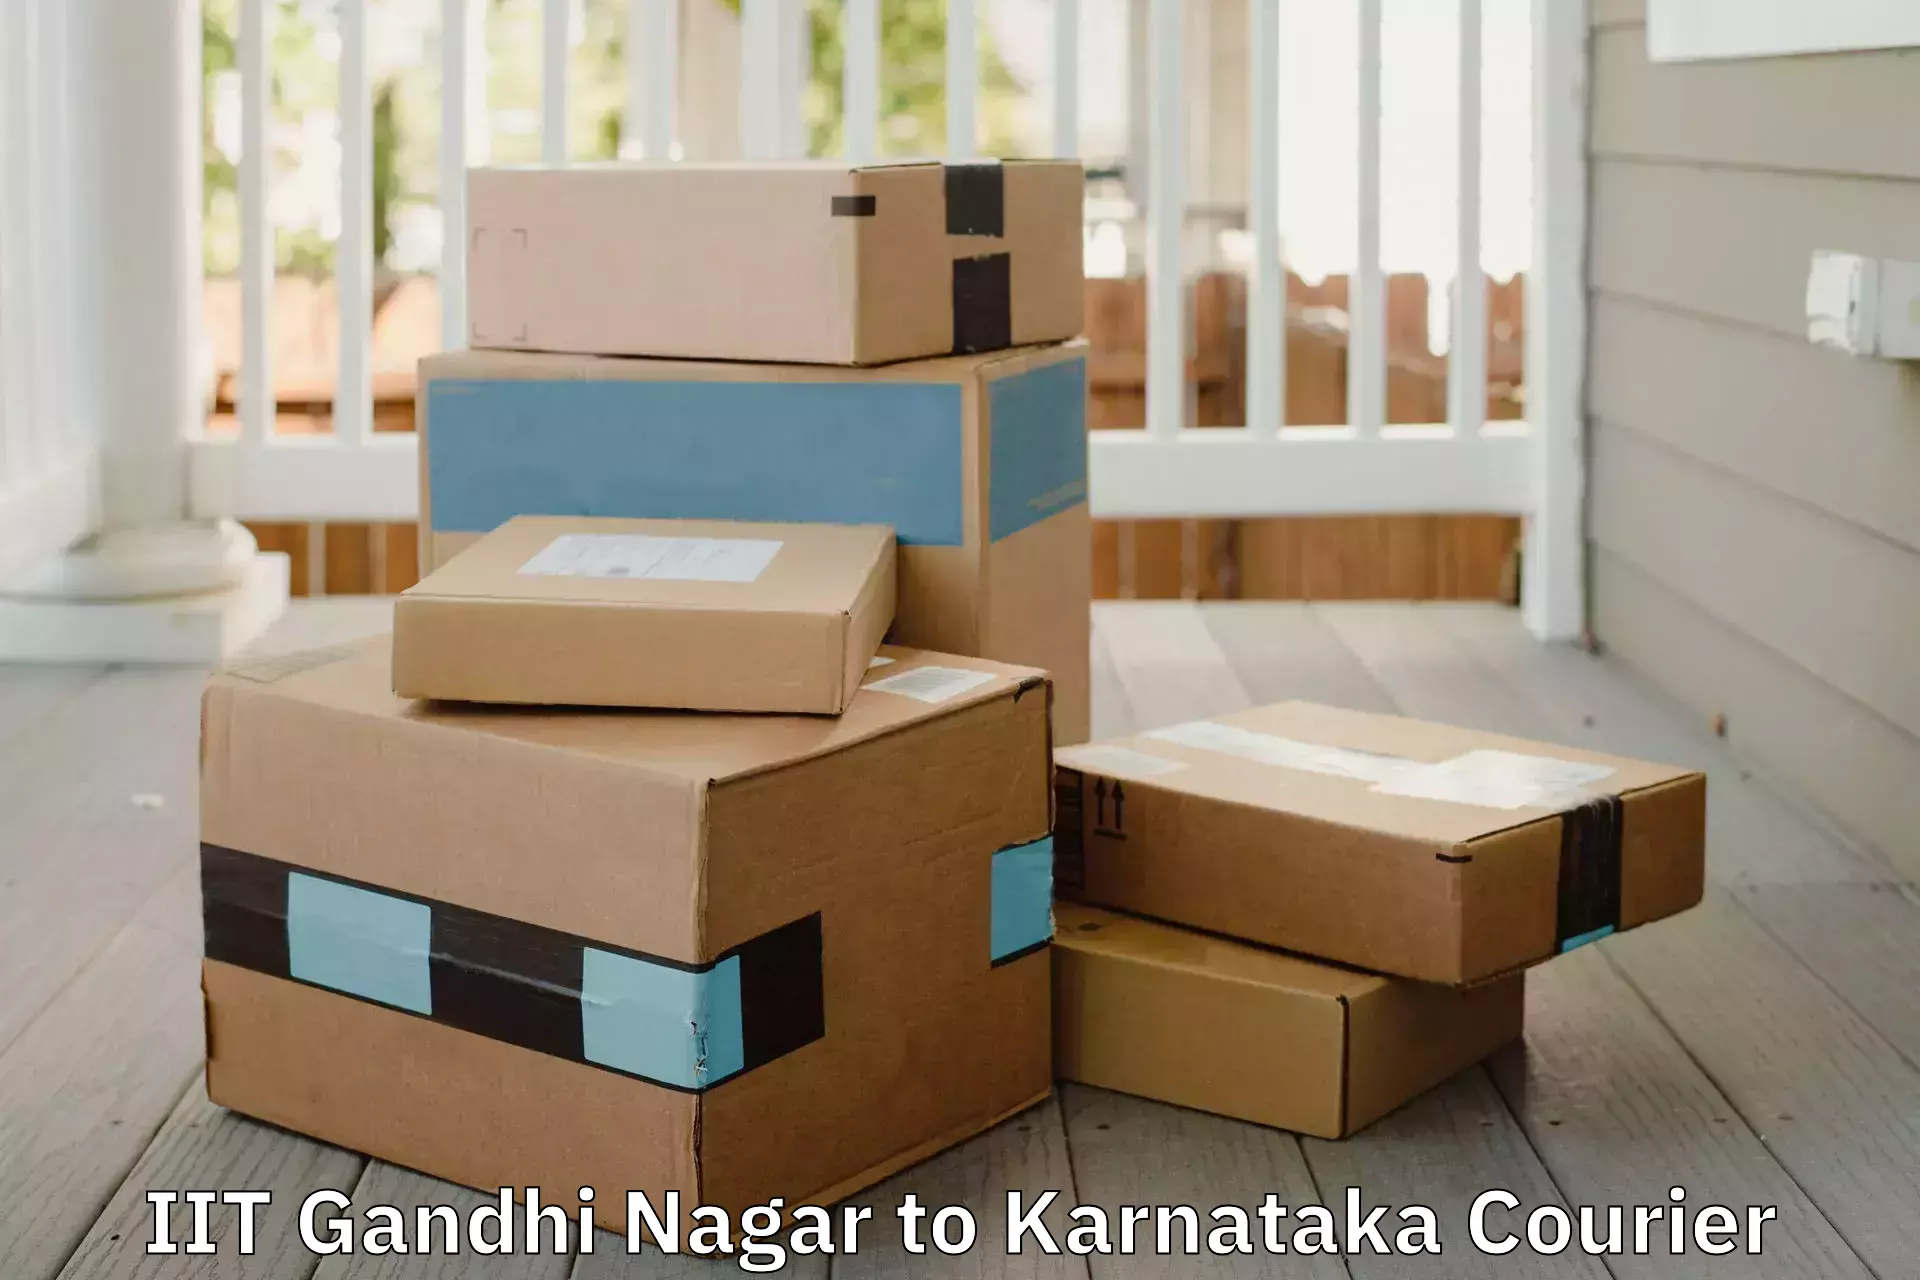 Furniture transport services IIT Gandhi Nagar to Basavakalyan